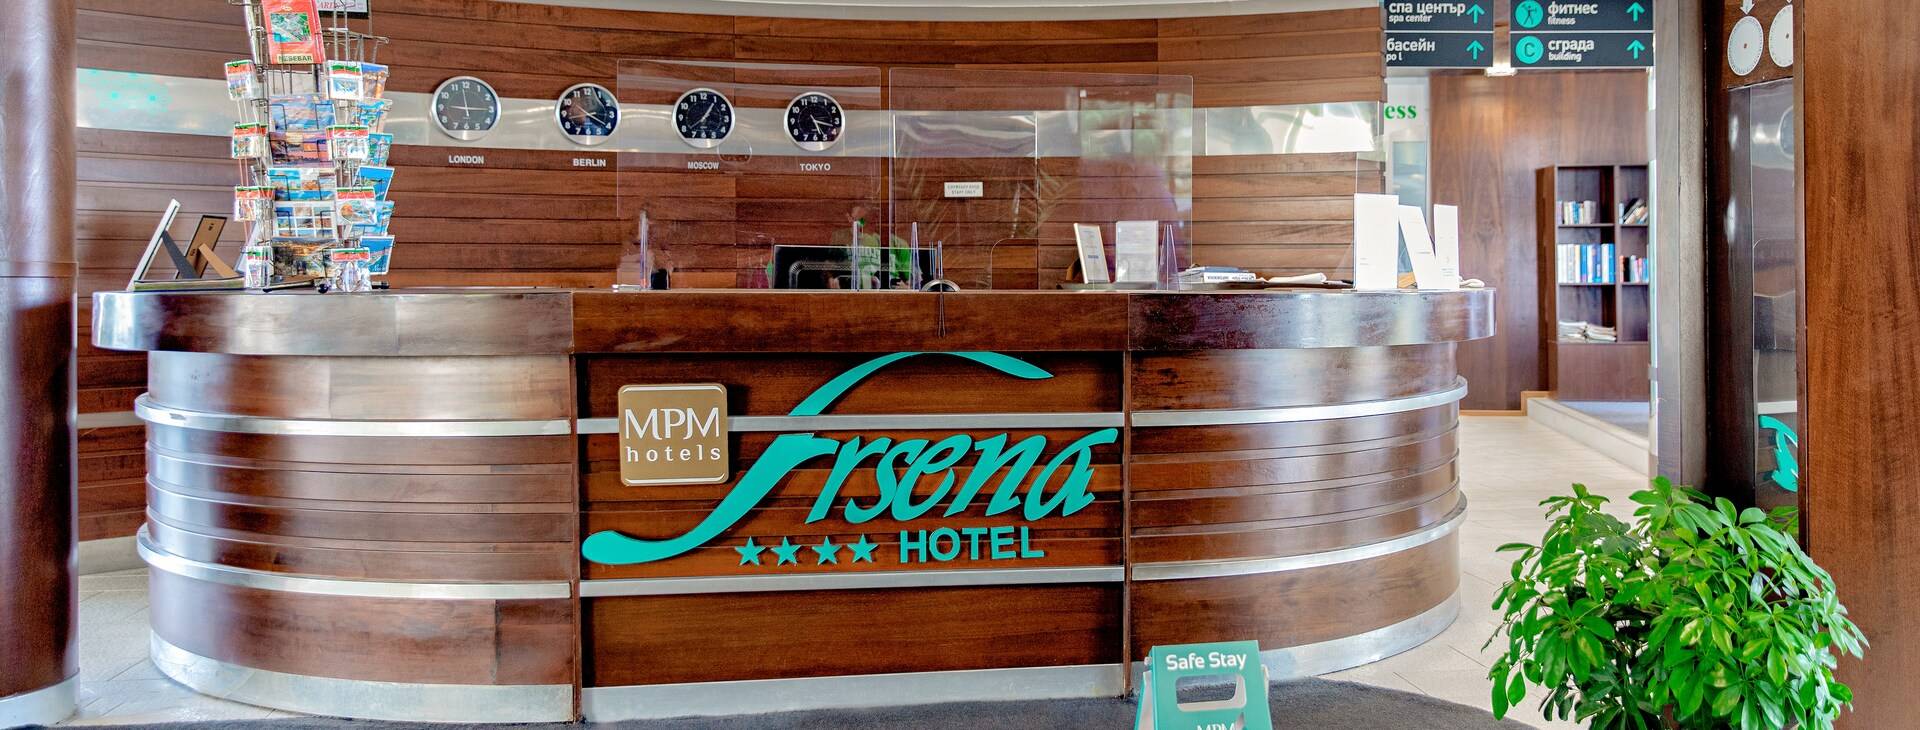 Hotel MPM Arsena Obrázek34